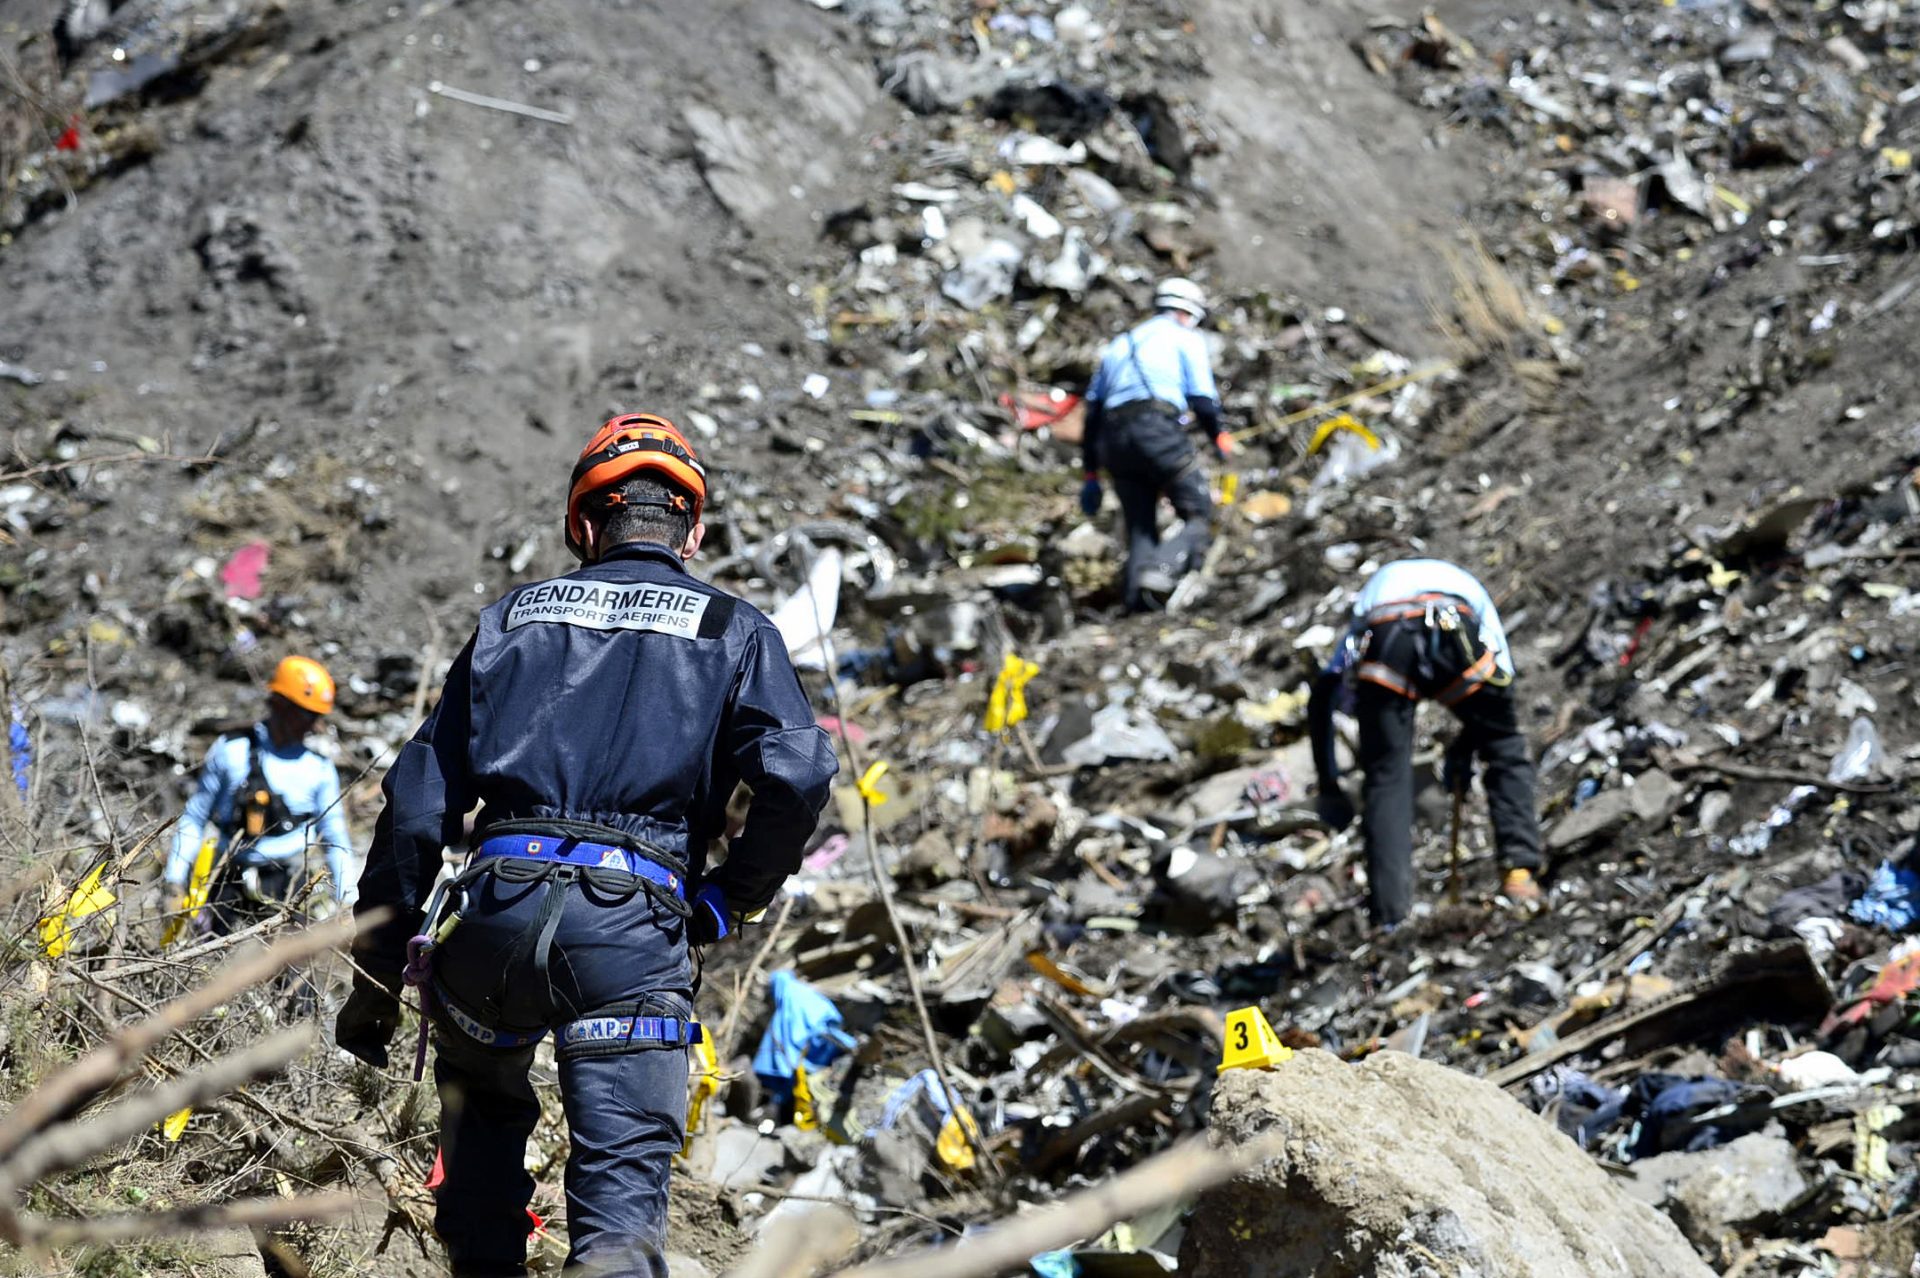 Encontrado vídeo dos últimos momentos do voo da Germanwings